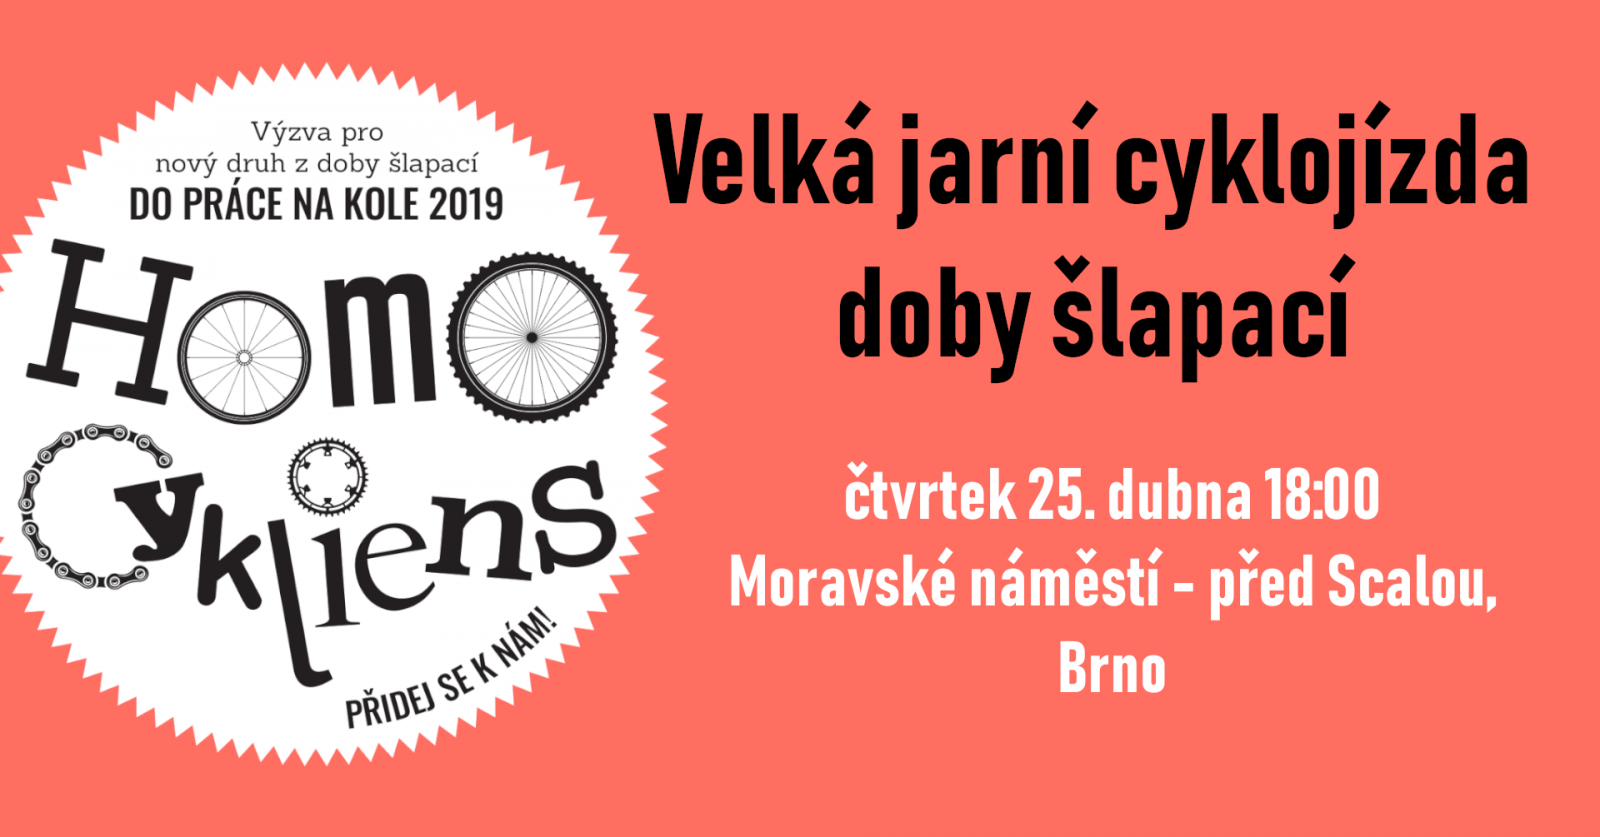 Velká jarní cyklojízda doby šlapací Brno 2019